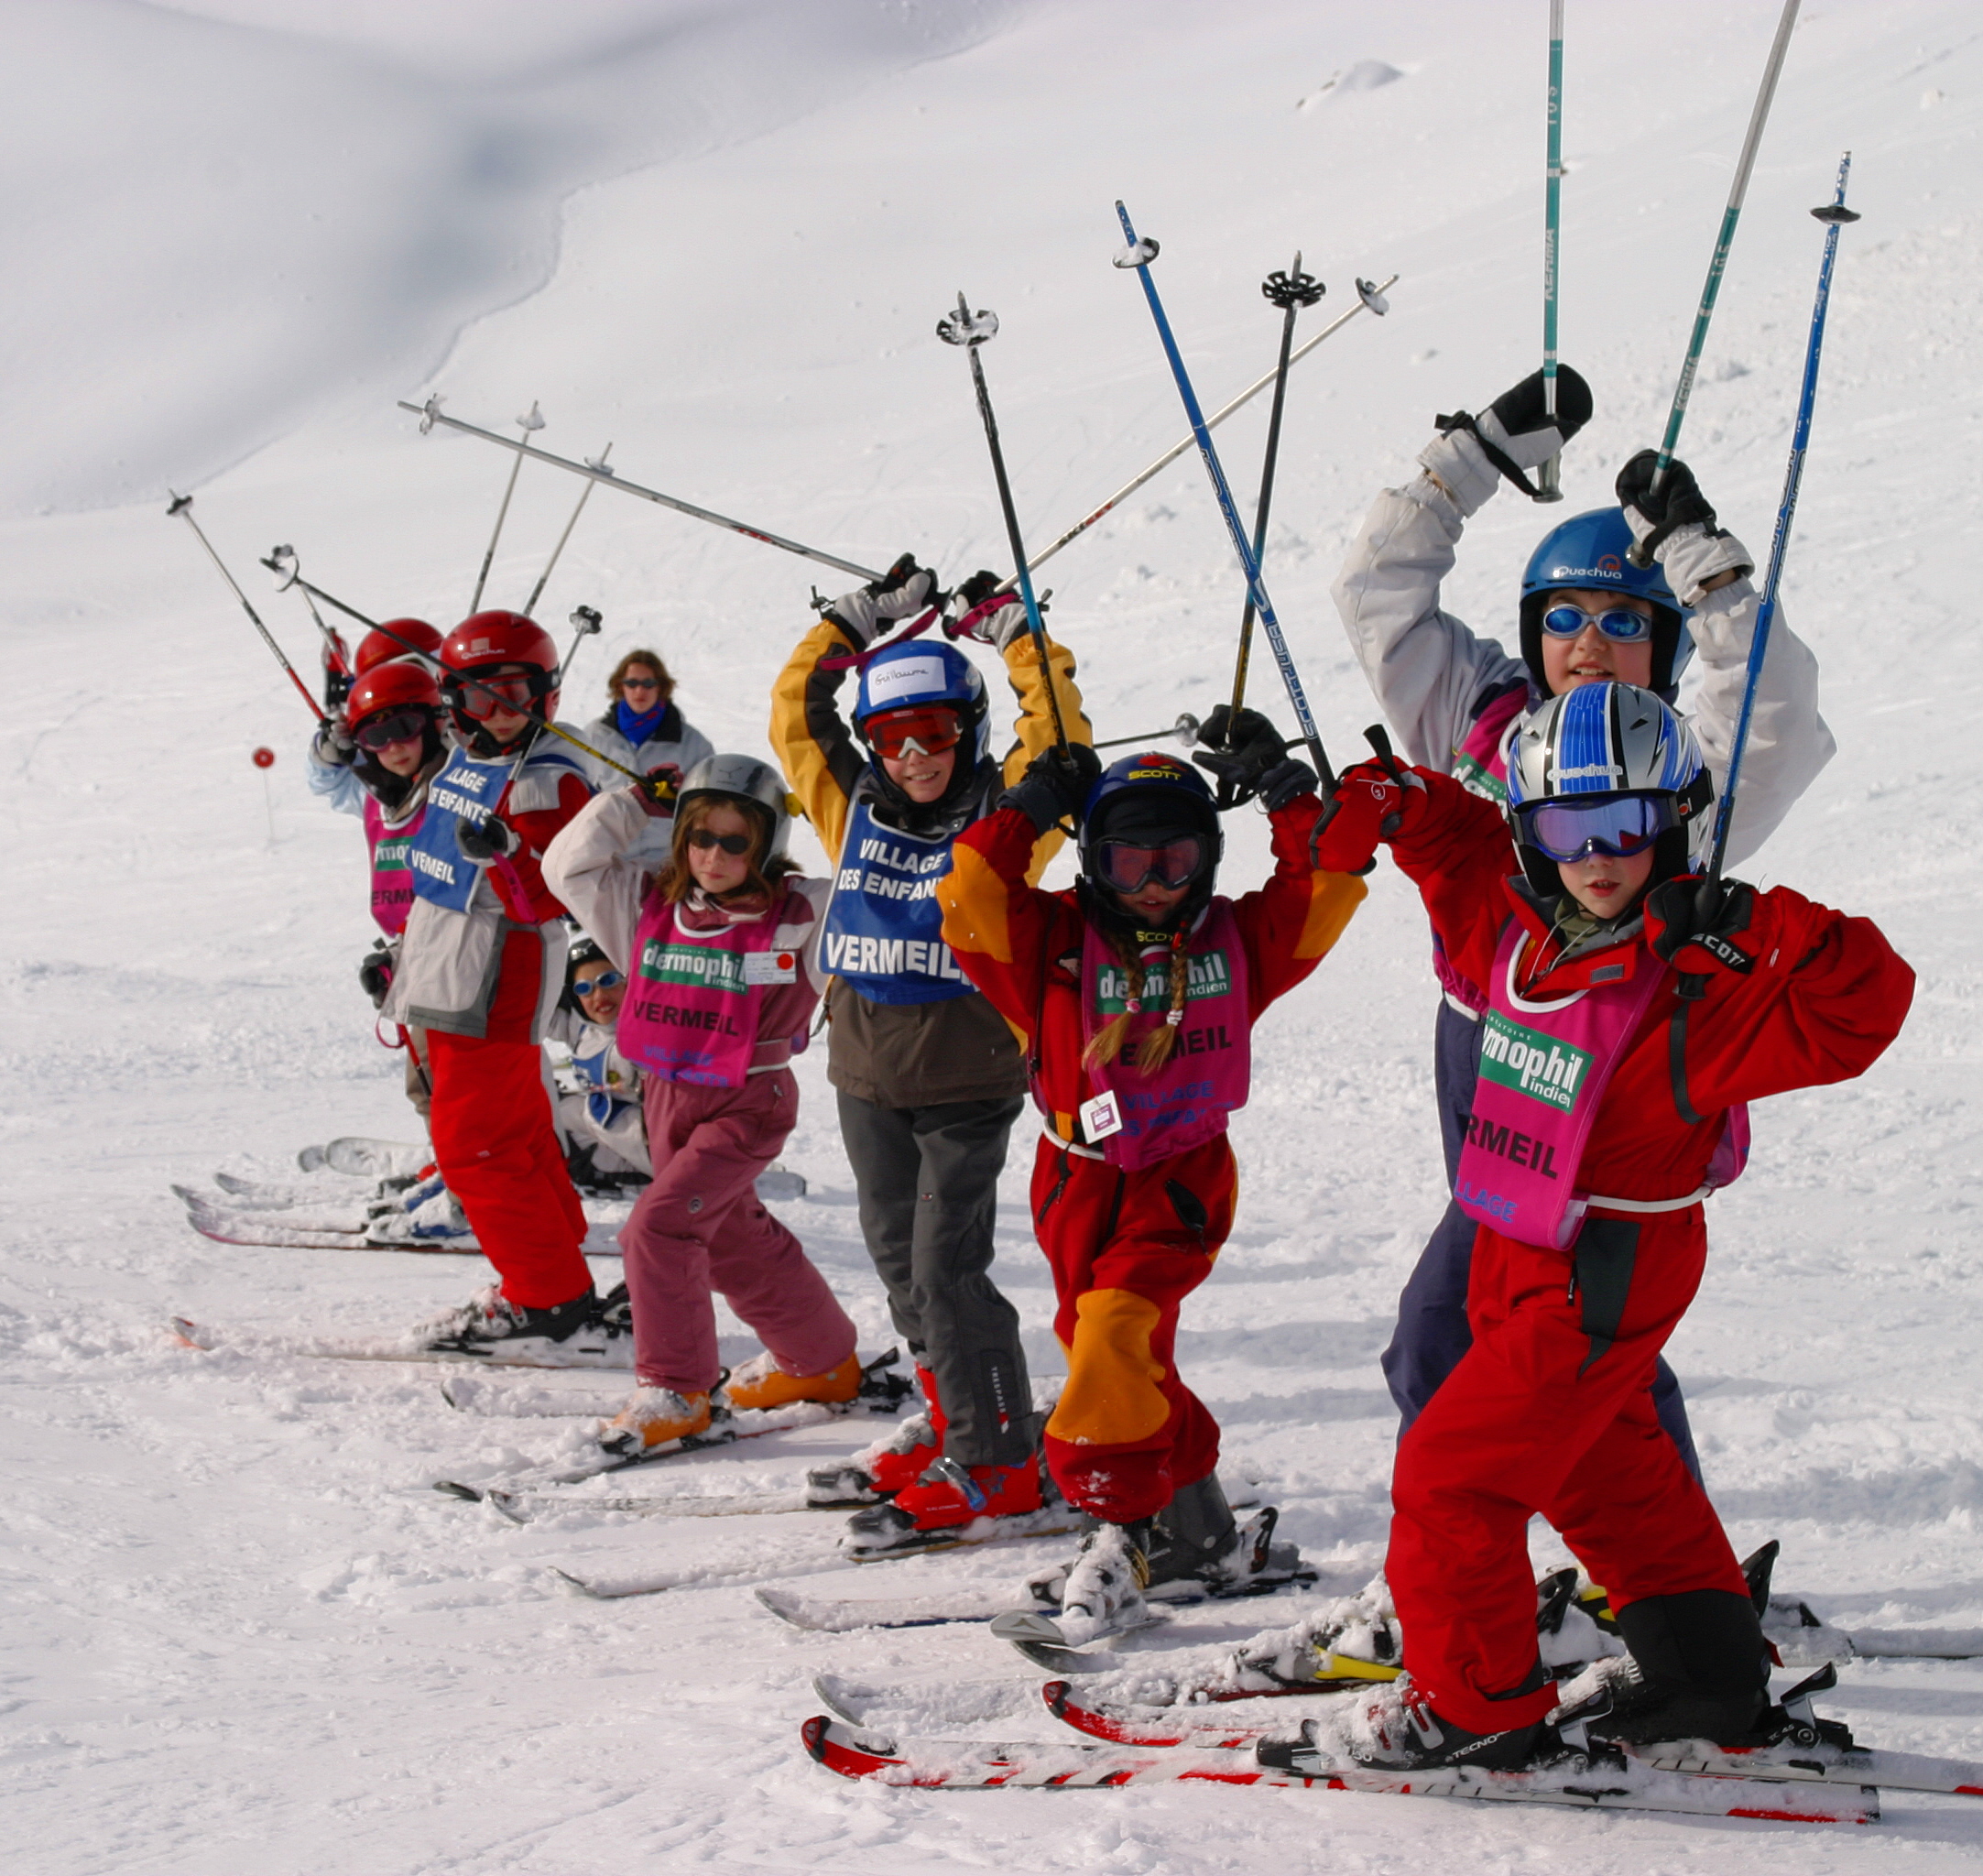 Ski School Avoriaz